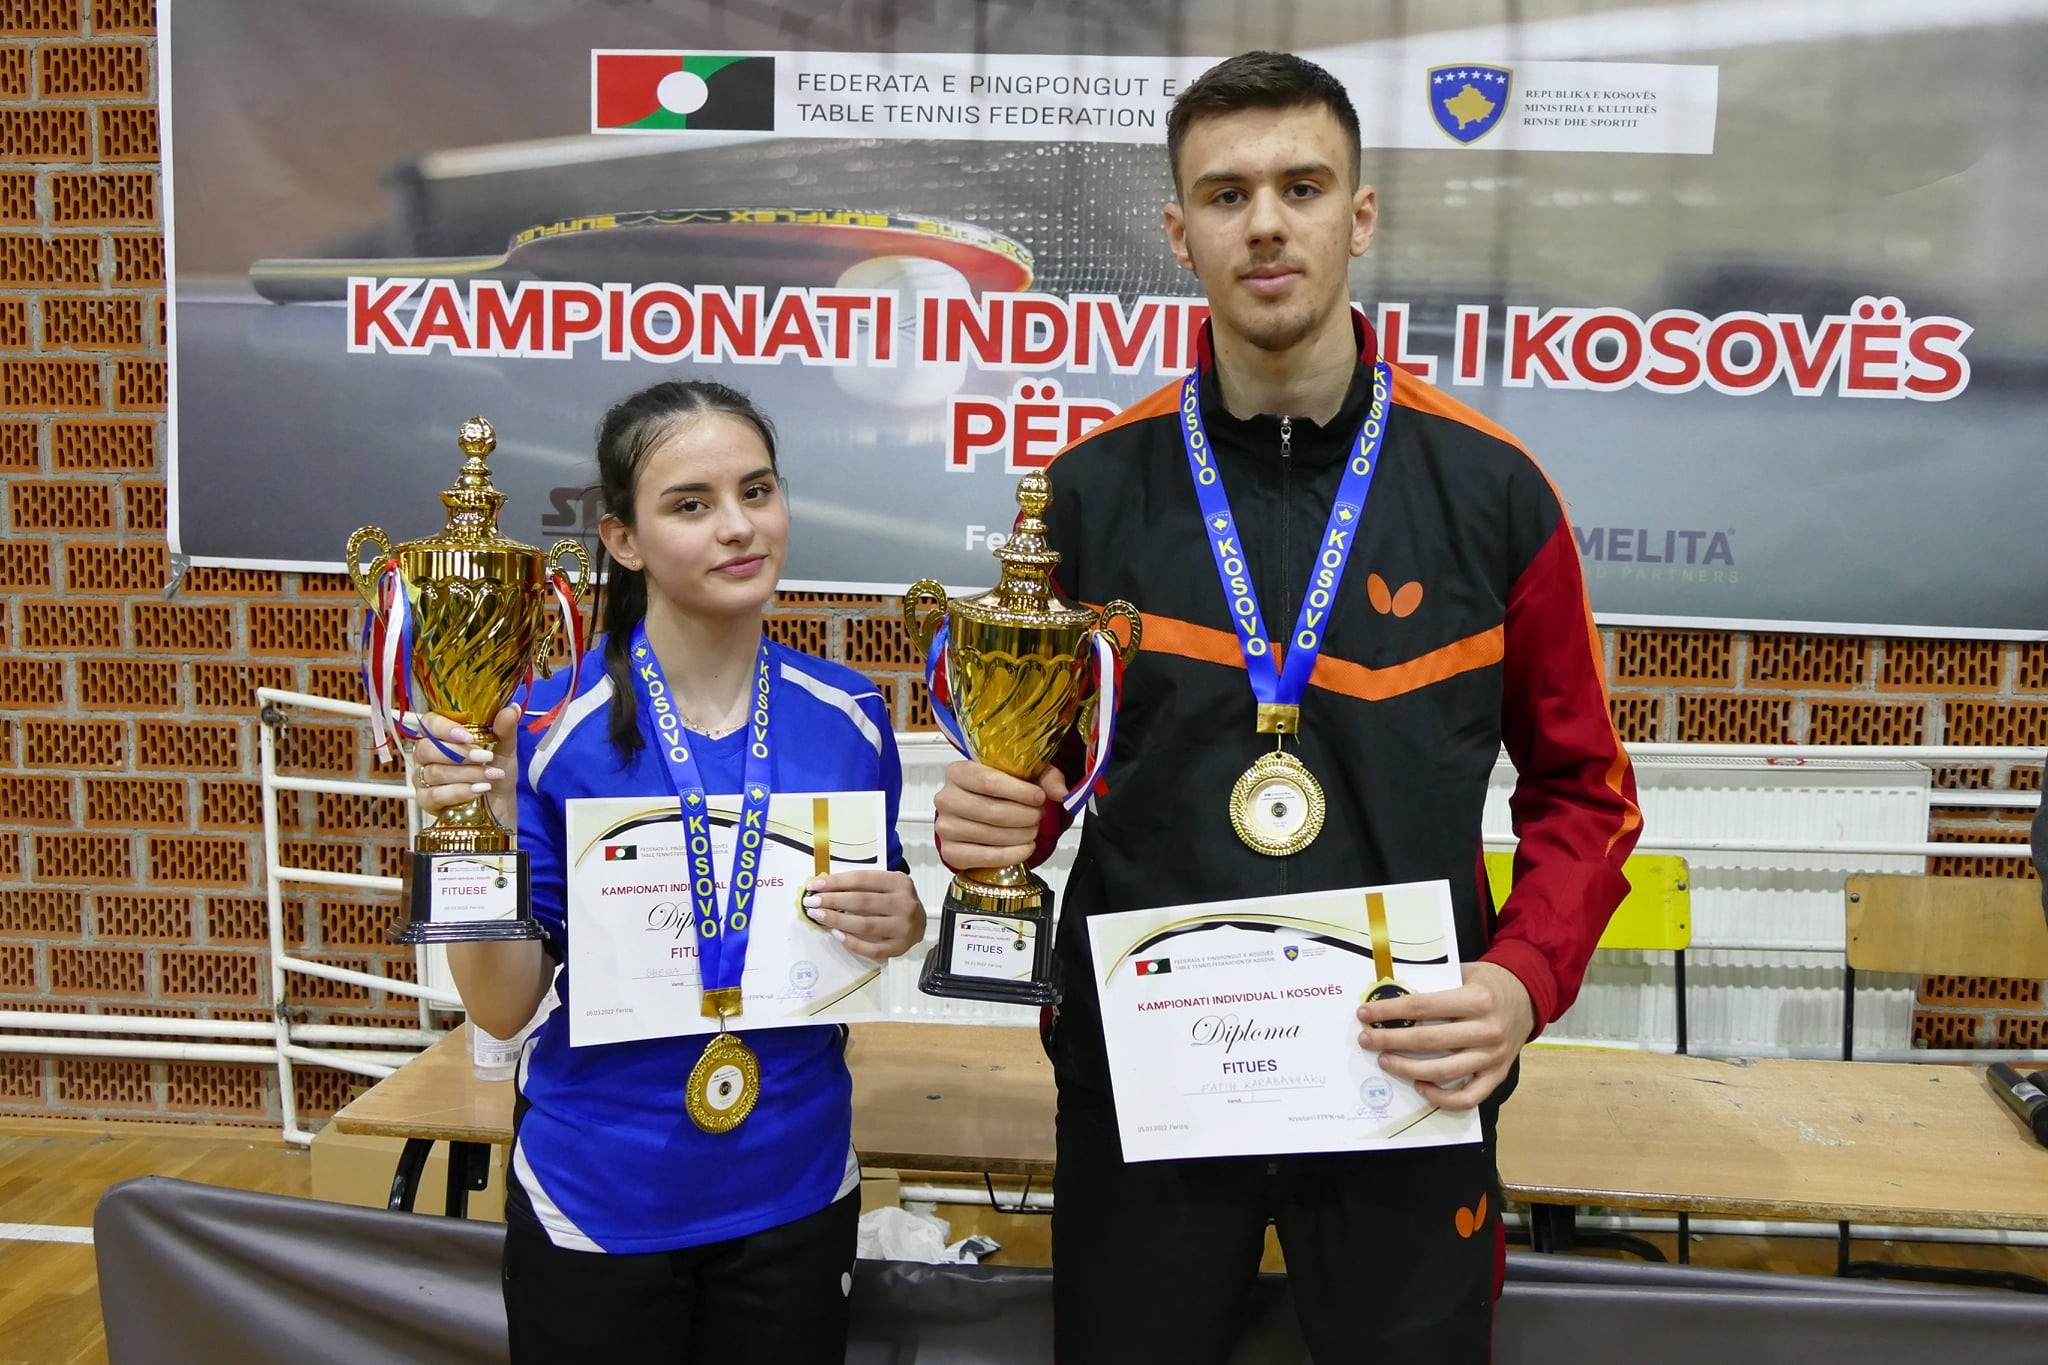 Karabaxhaku dhe Hashani kampion të kampionatit individual për U21